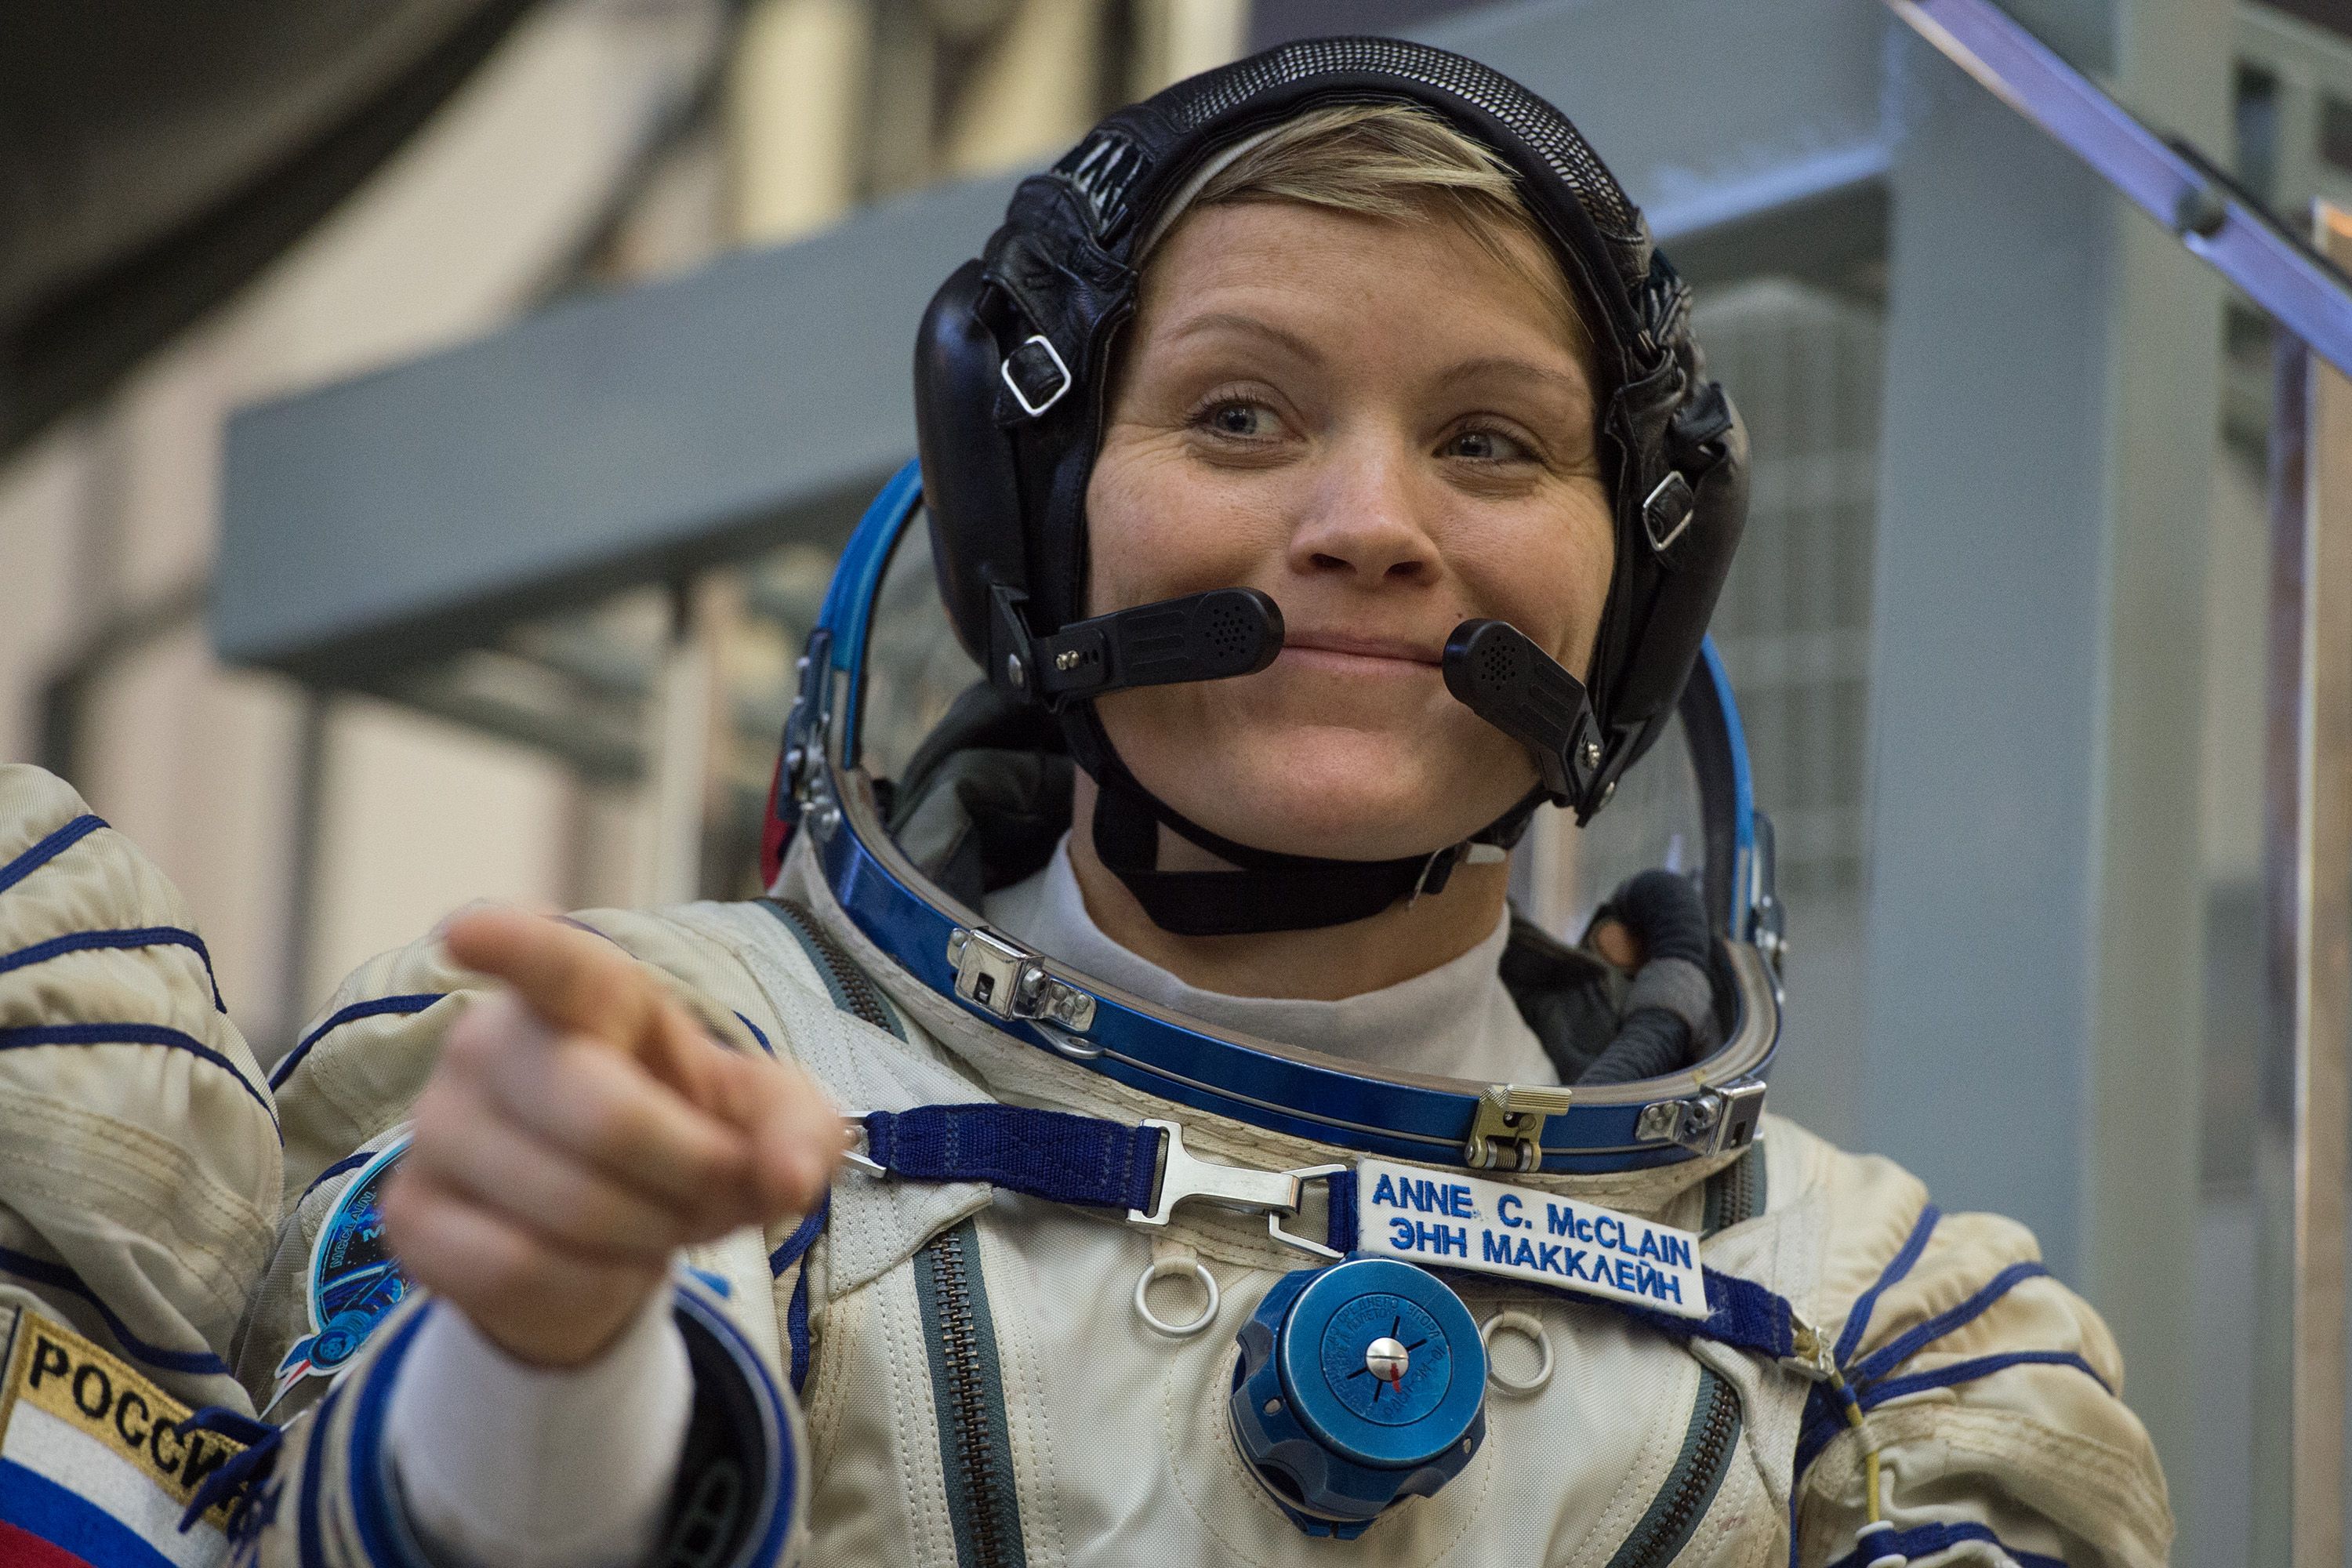 En el 2018, la astronauta Anne McClain participó en un viaje espacial, cuyo fin pretendía realizar la primera caminata femenina de la Nasa, pero la misión fracasó. (Foto Prensa Libre: AFP)